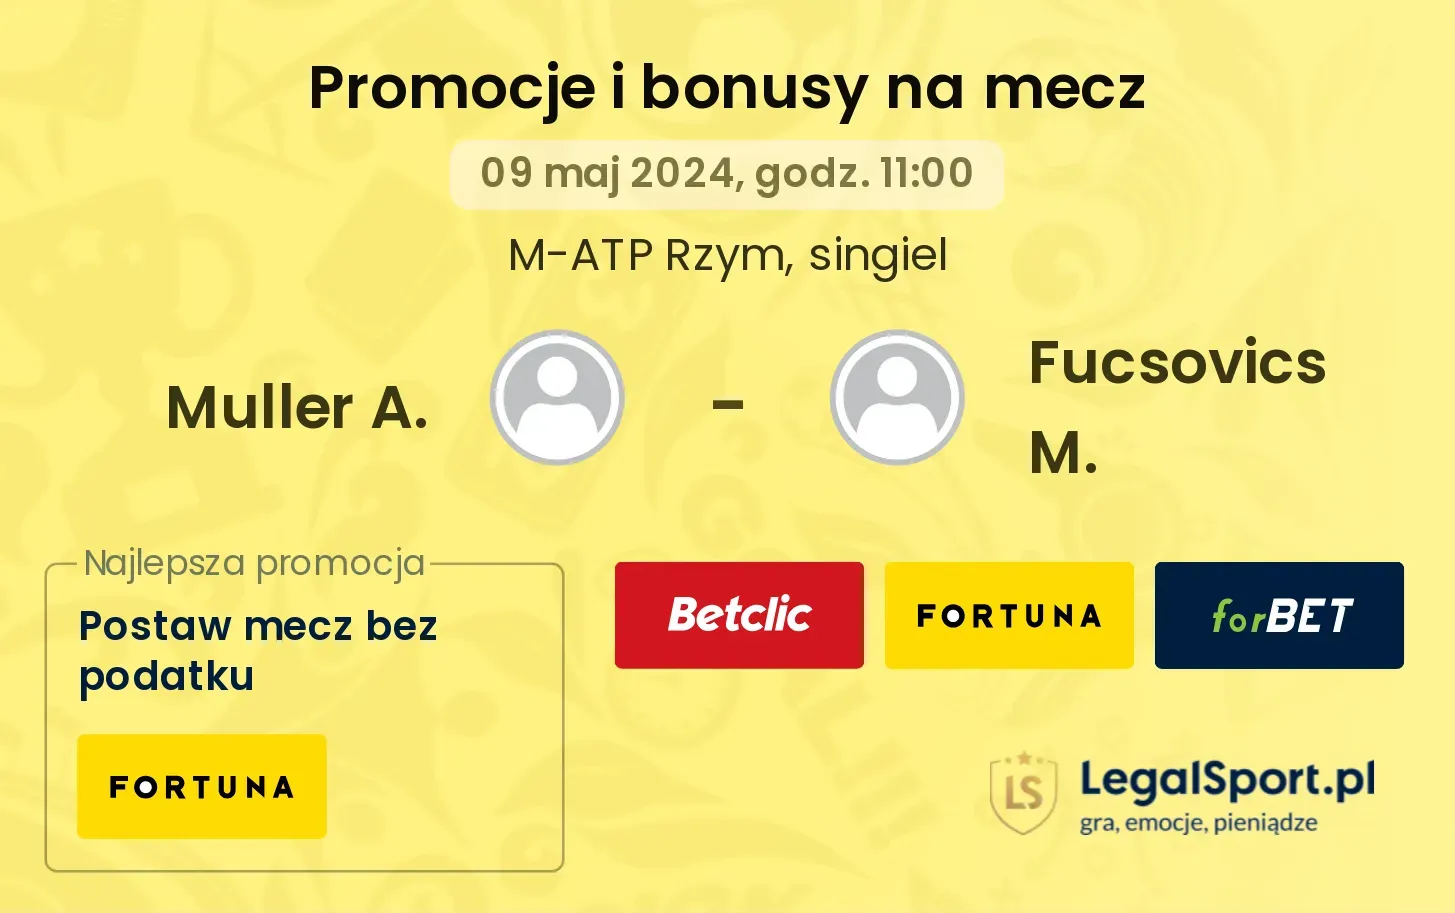 Muller A. - Fucsovics M. promocje bonusy na mecz